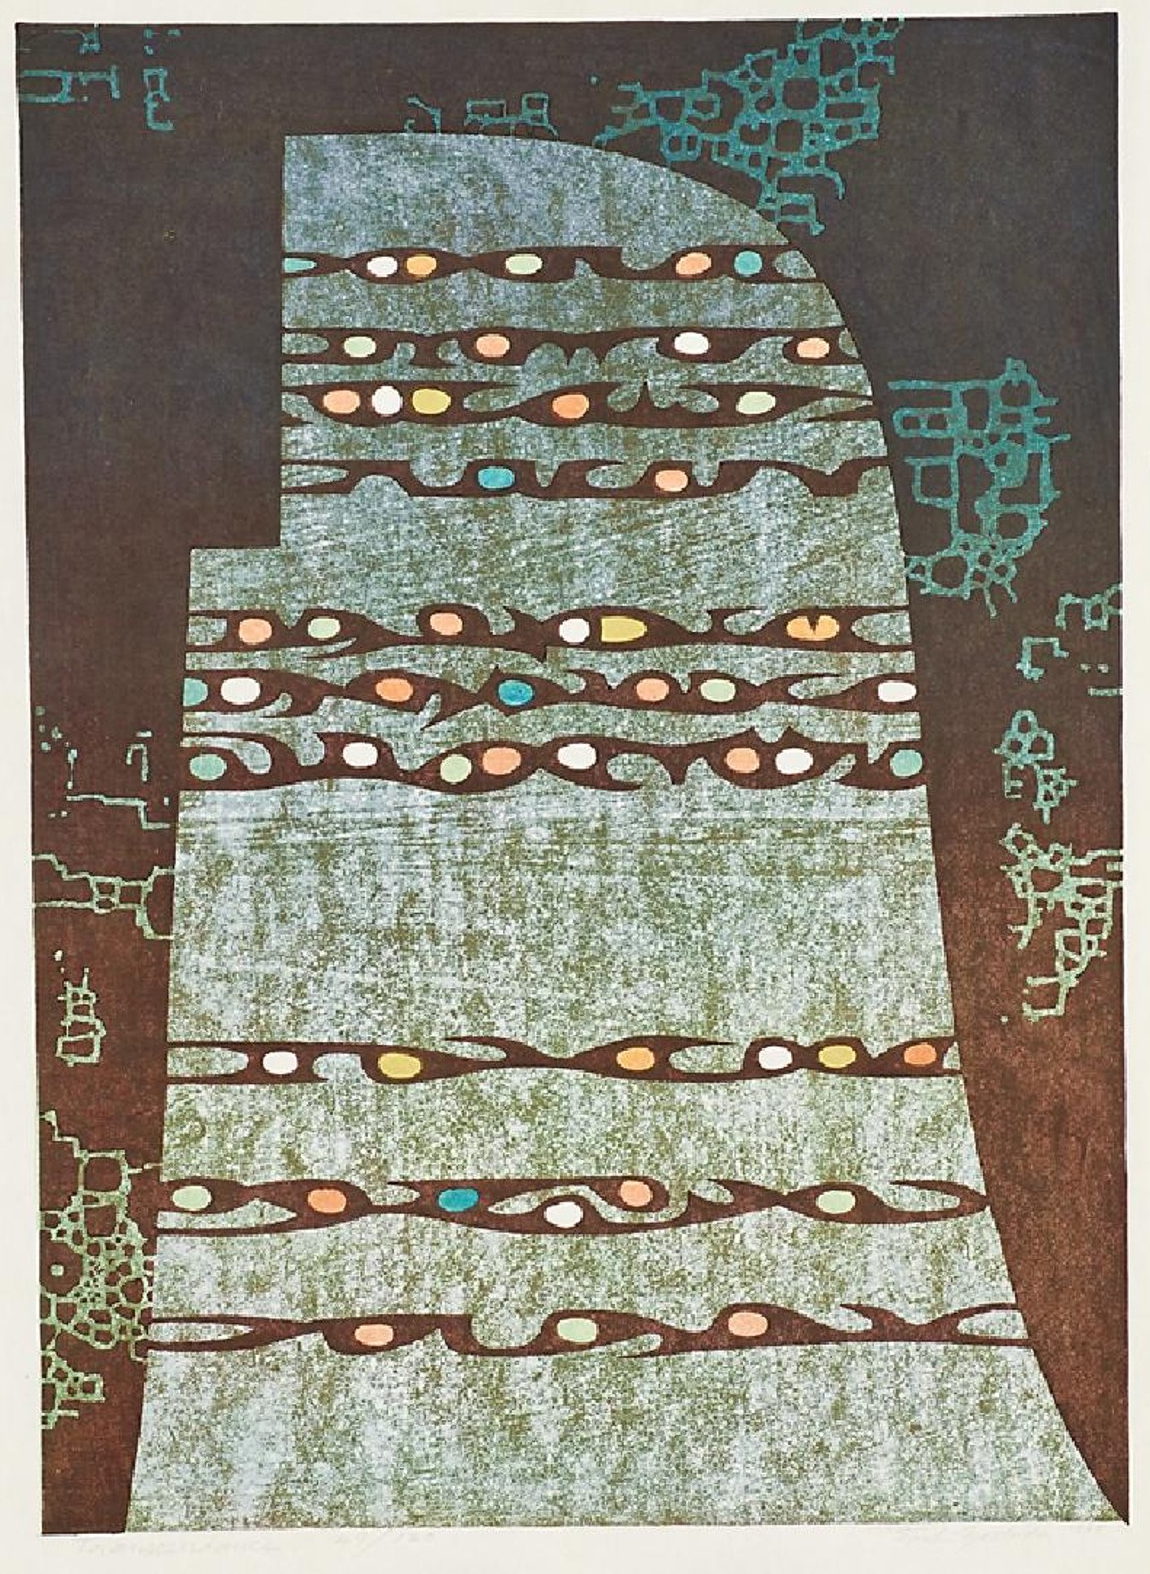 Toshi Yoshida “Transcendence” 1968 woodblock print